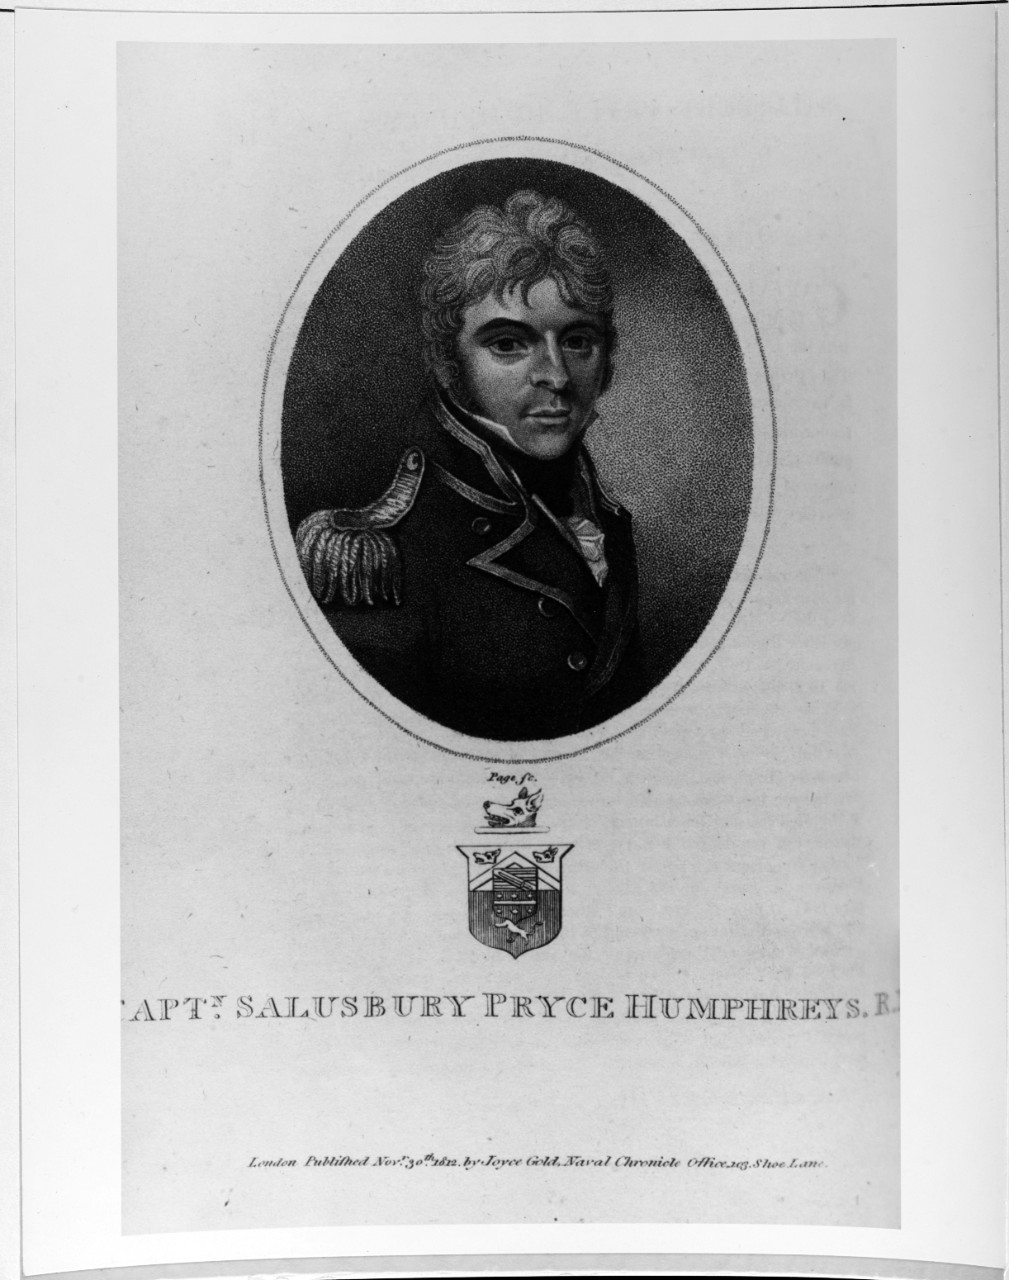 Salusbury Pryce Humphreys (17?-18?), British Navy Captain